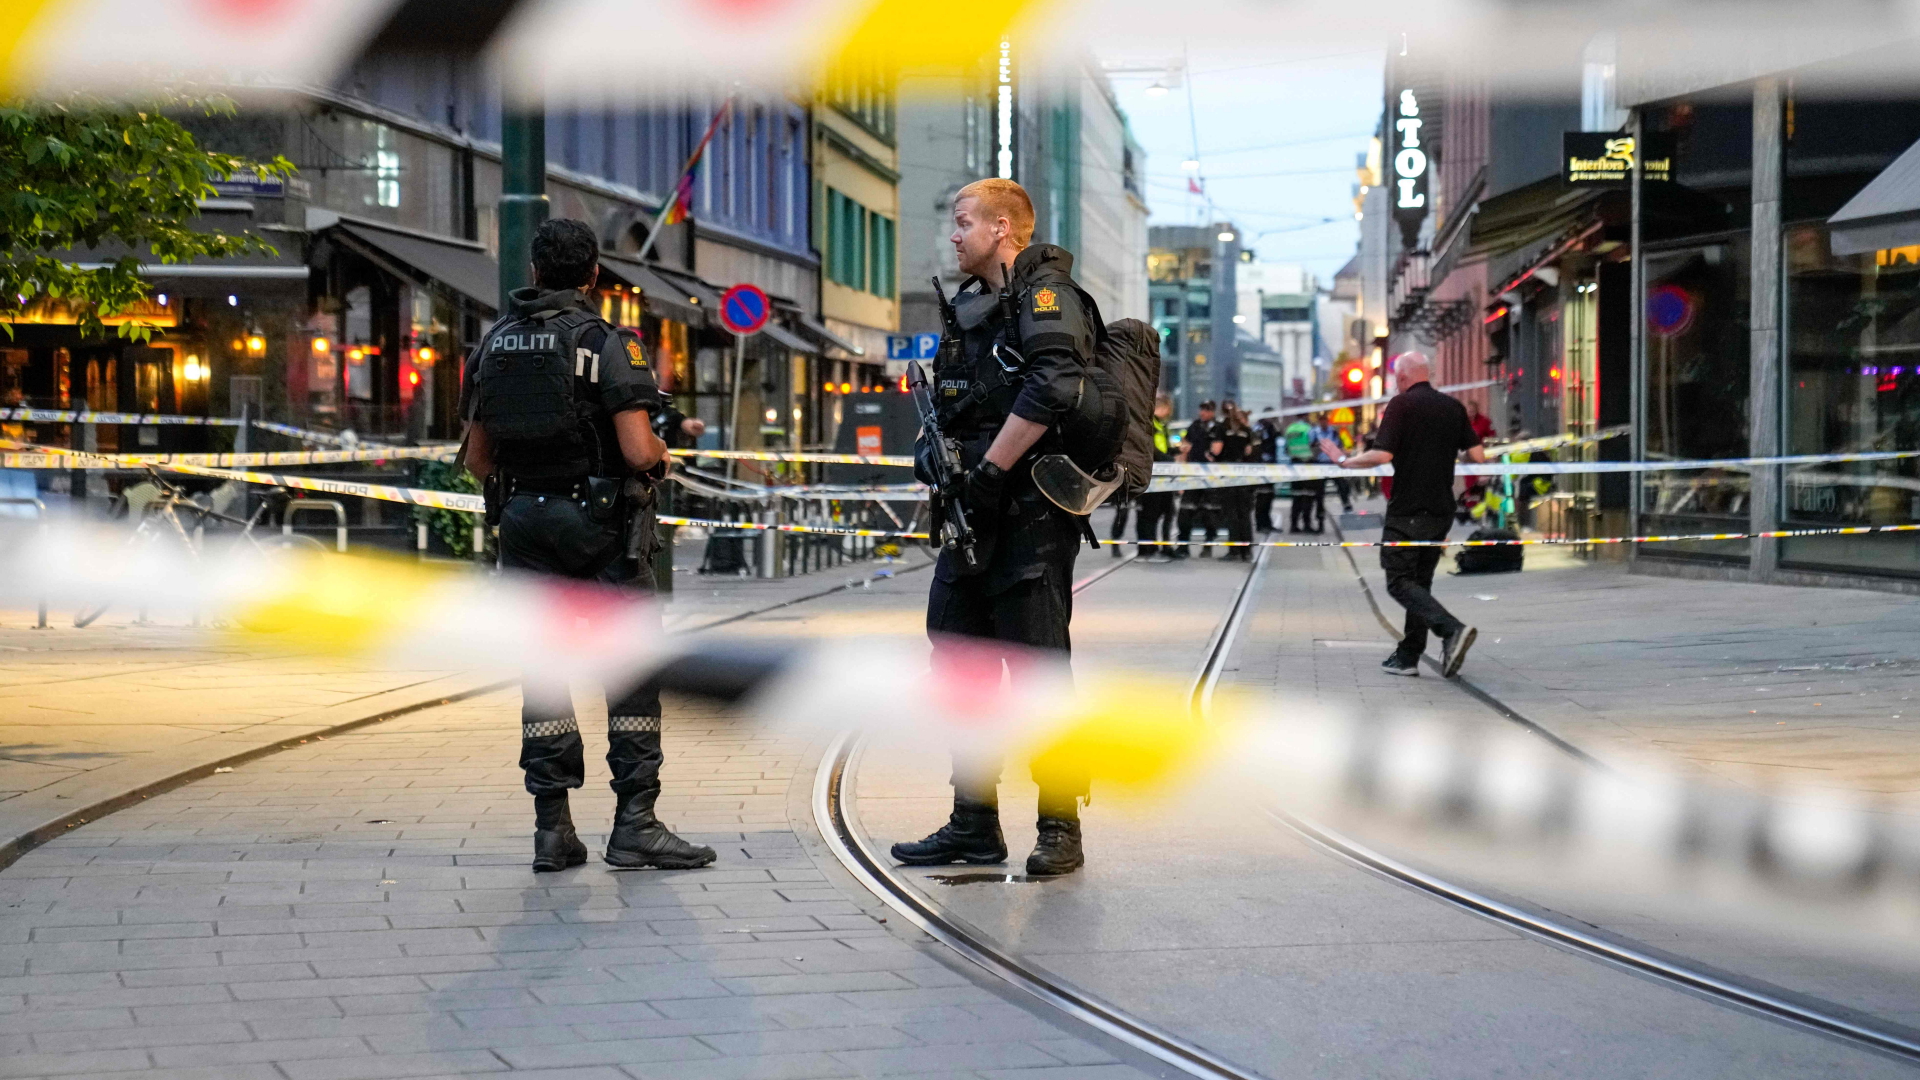 Polizei: Terrorverdacht nach Schüssen in Osloer Nachtclub